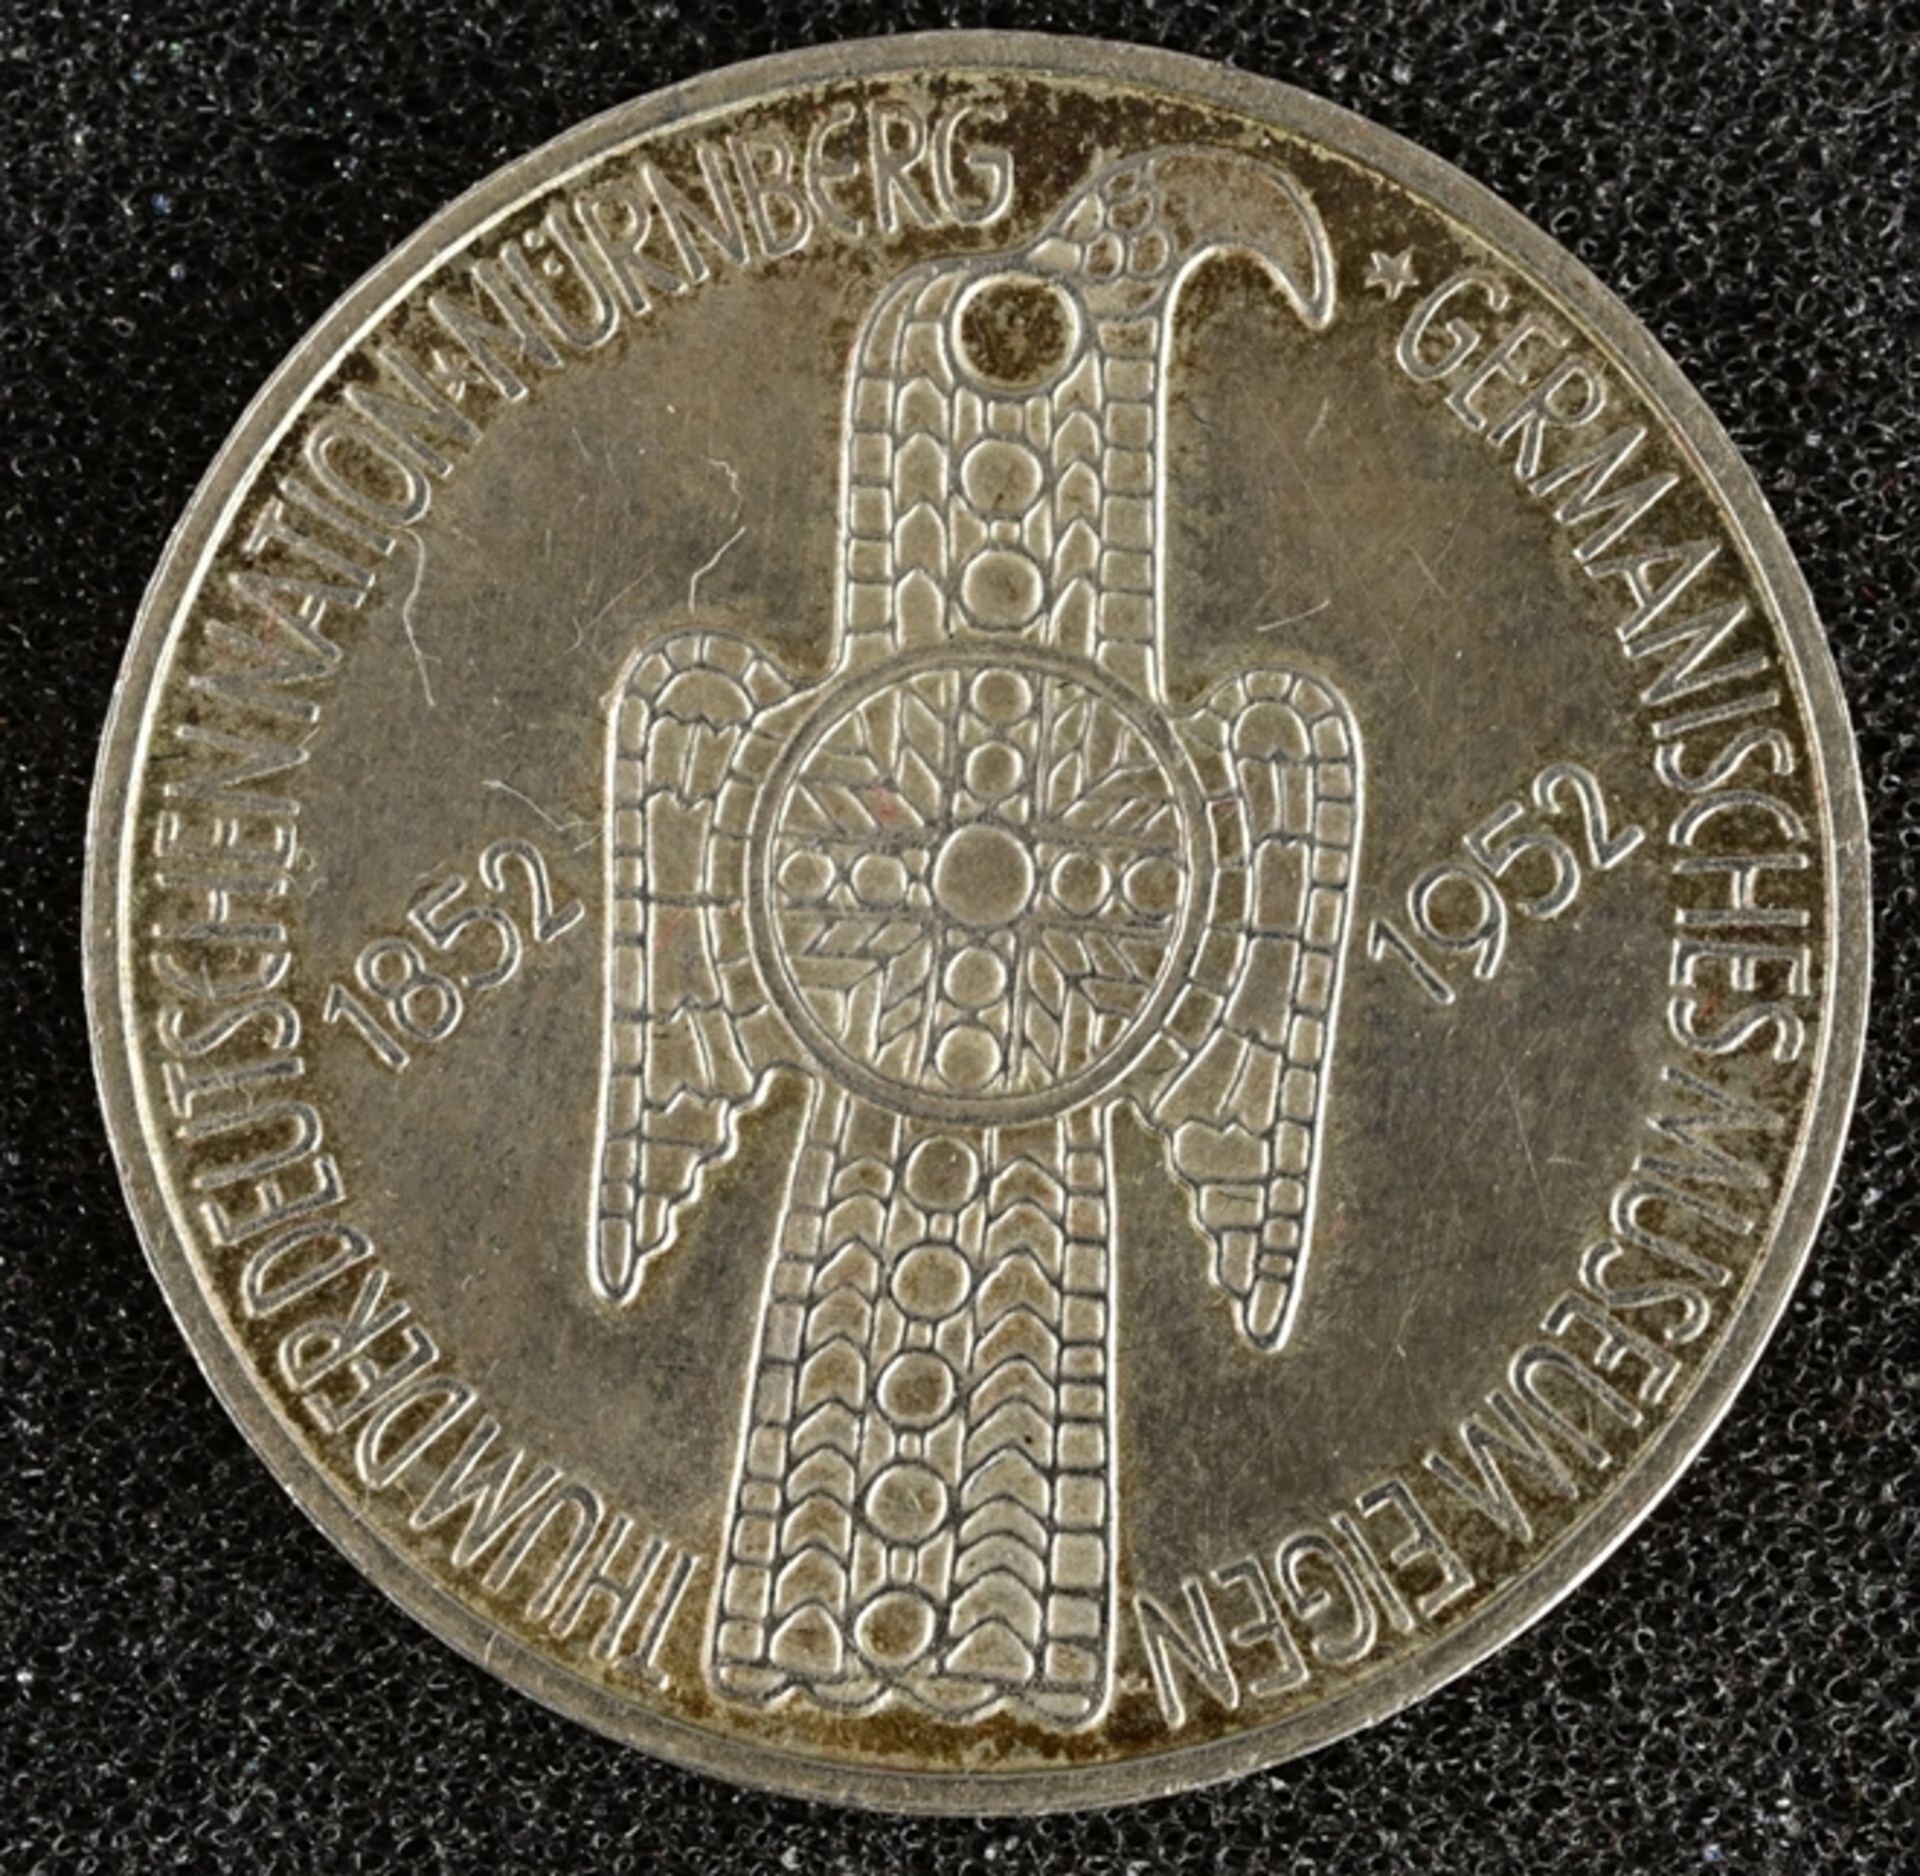 5 DM, 1952 - D, Germanisches Museum, SS/VZ 625/000 Silber. - Image 2 of 3